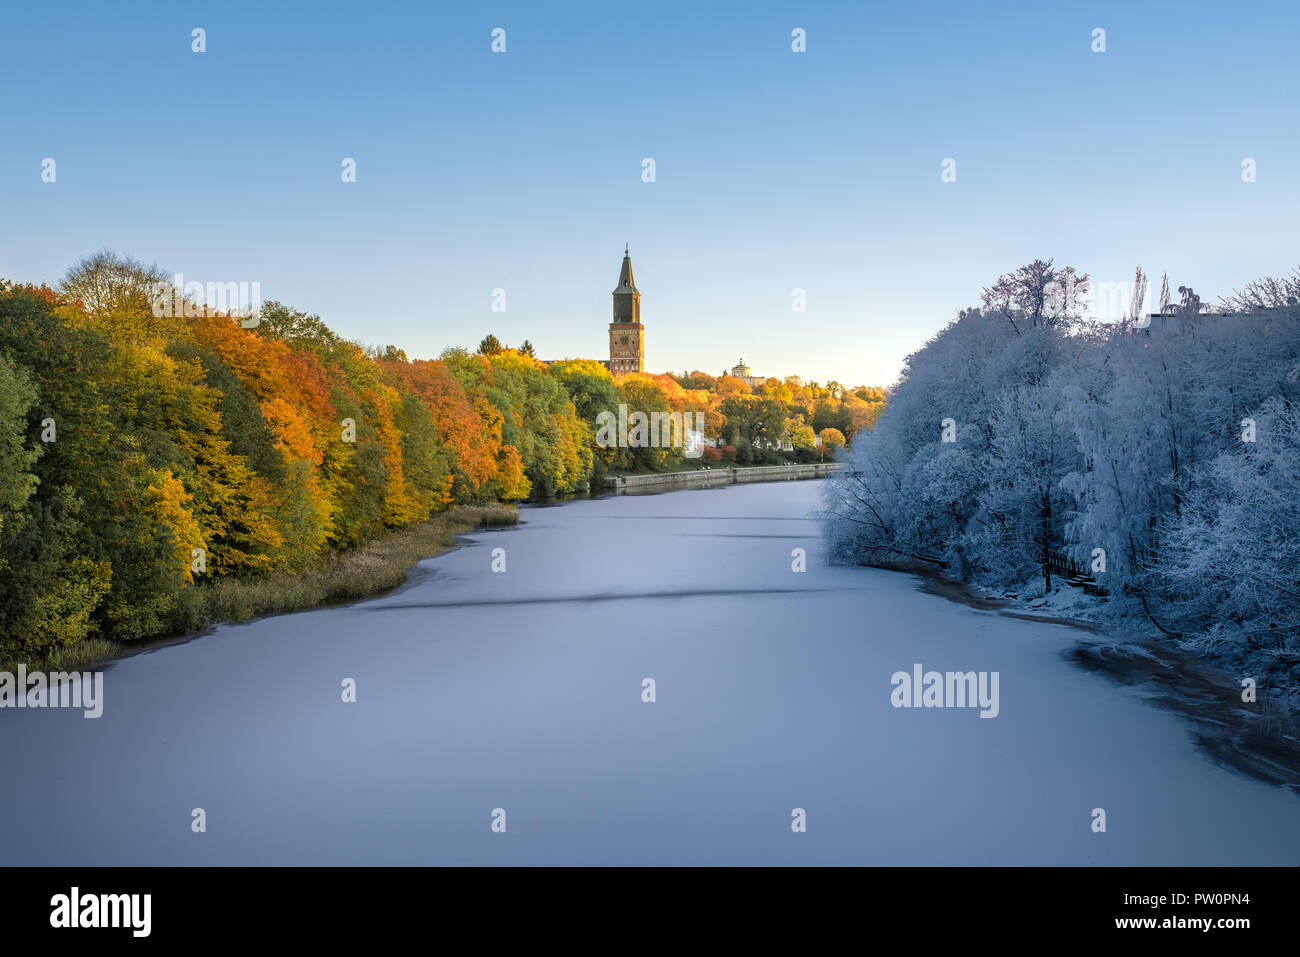 Imagen de transición desde el otoño hasta el invierno en una sola imagen con Frozen River y colorido follaje de otoño y la catedral de Turku en segundo plano. Foto de stock